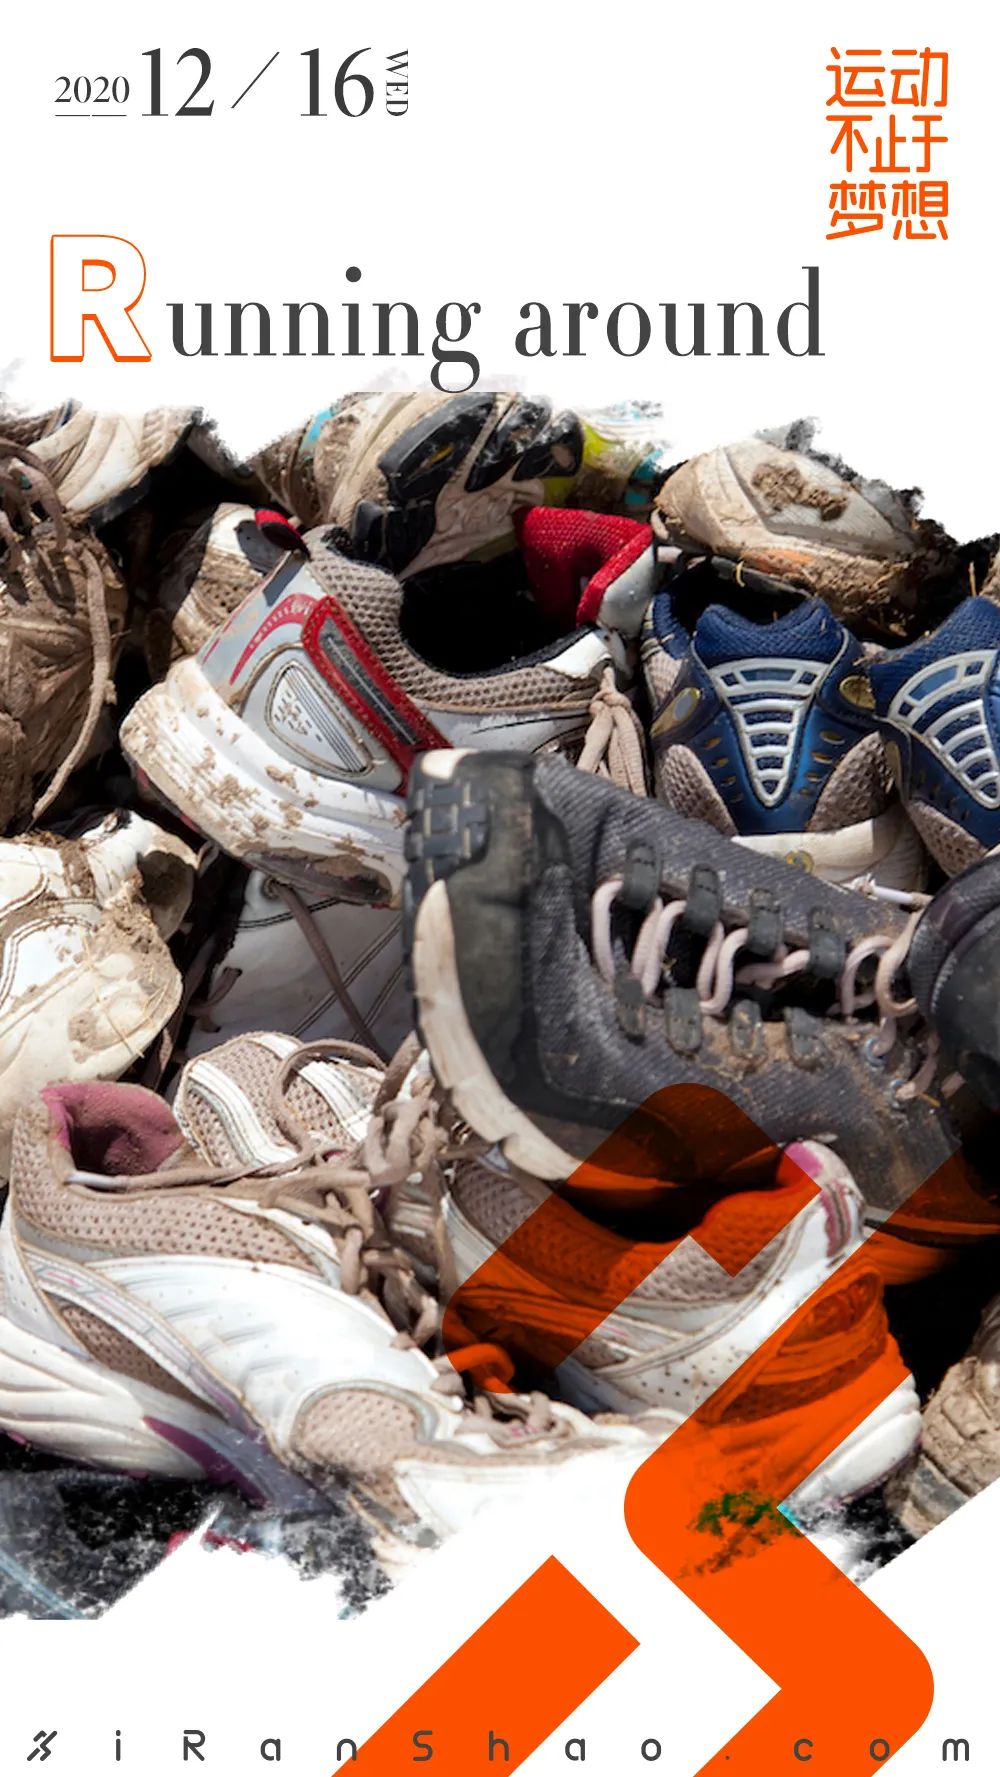 帆布鞋被扔进垃圾桶图片